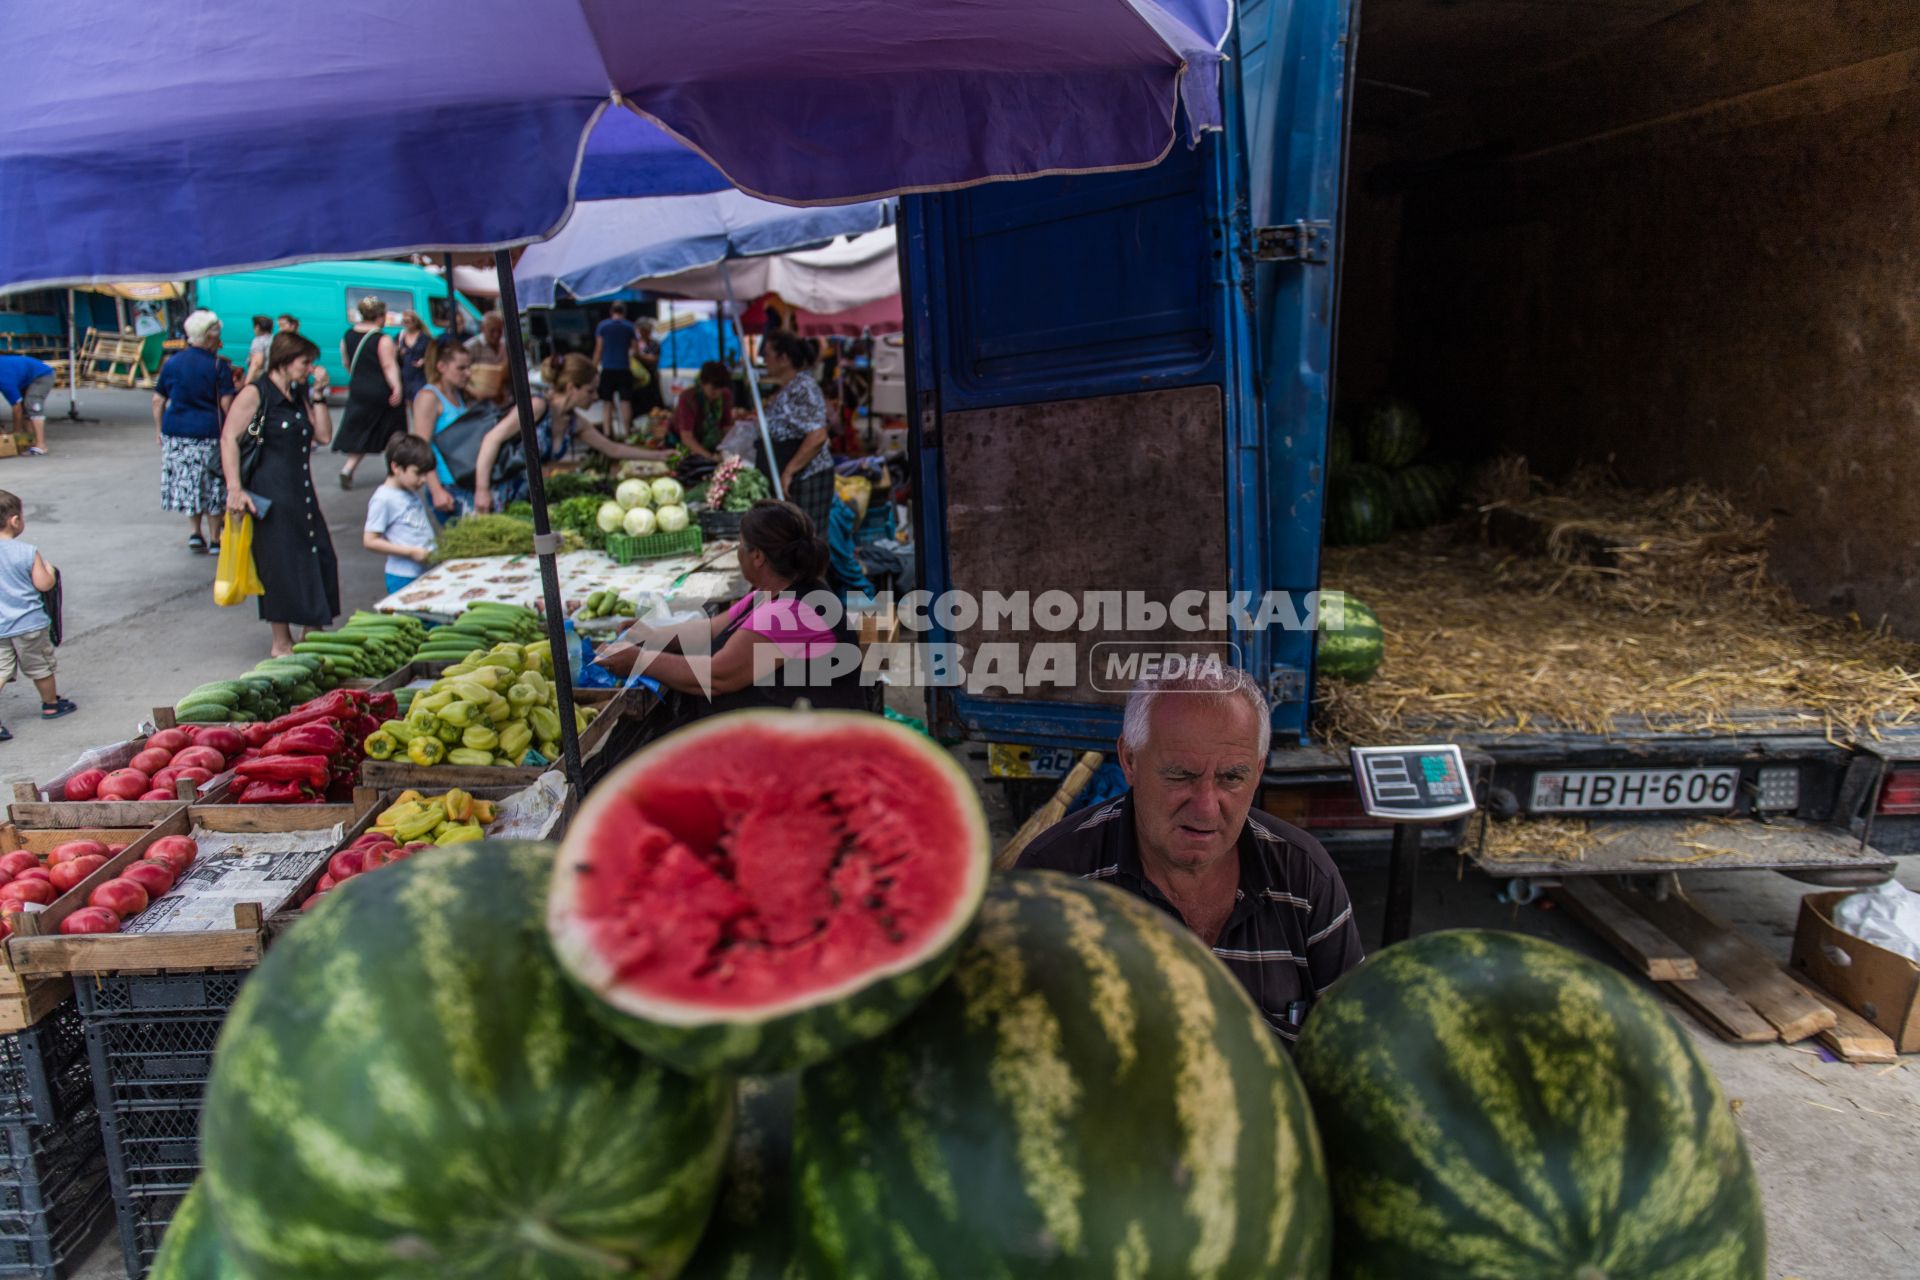 Грузия, Тбилиси.  Мужчина продает арбузы на рынке.